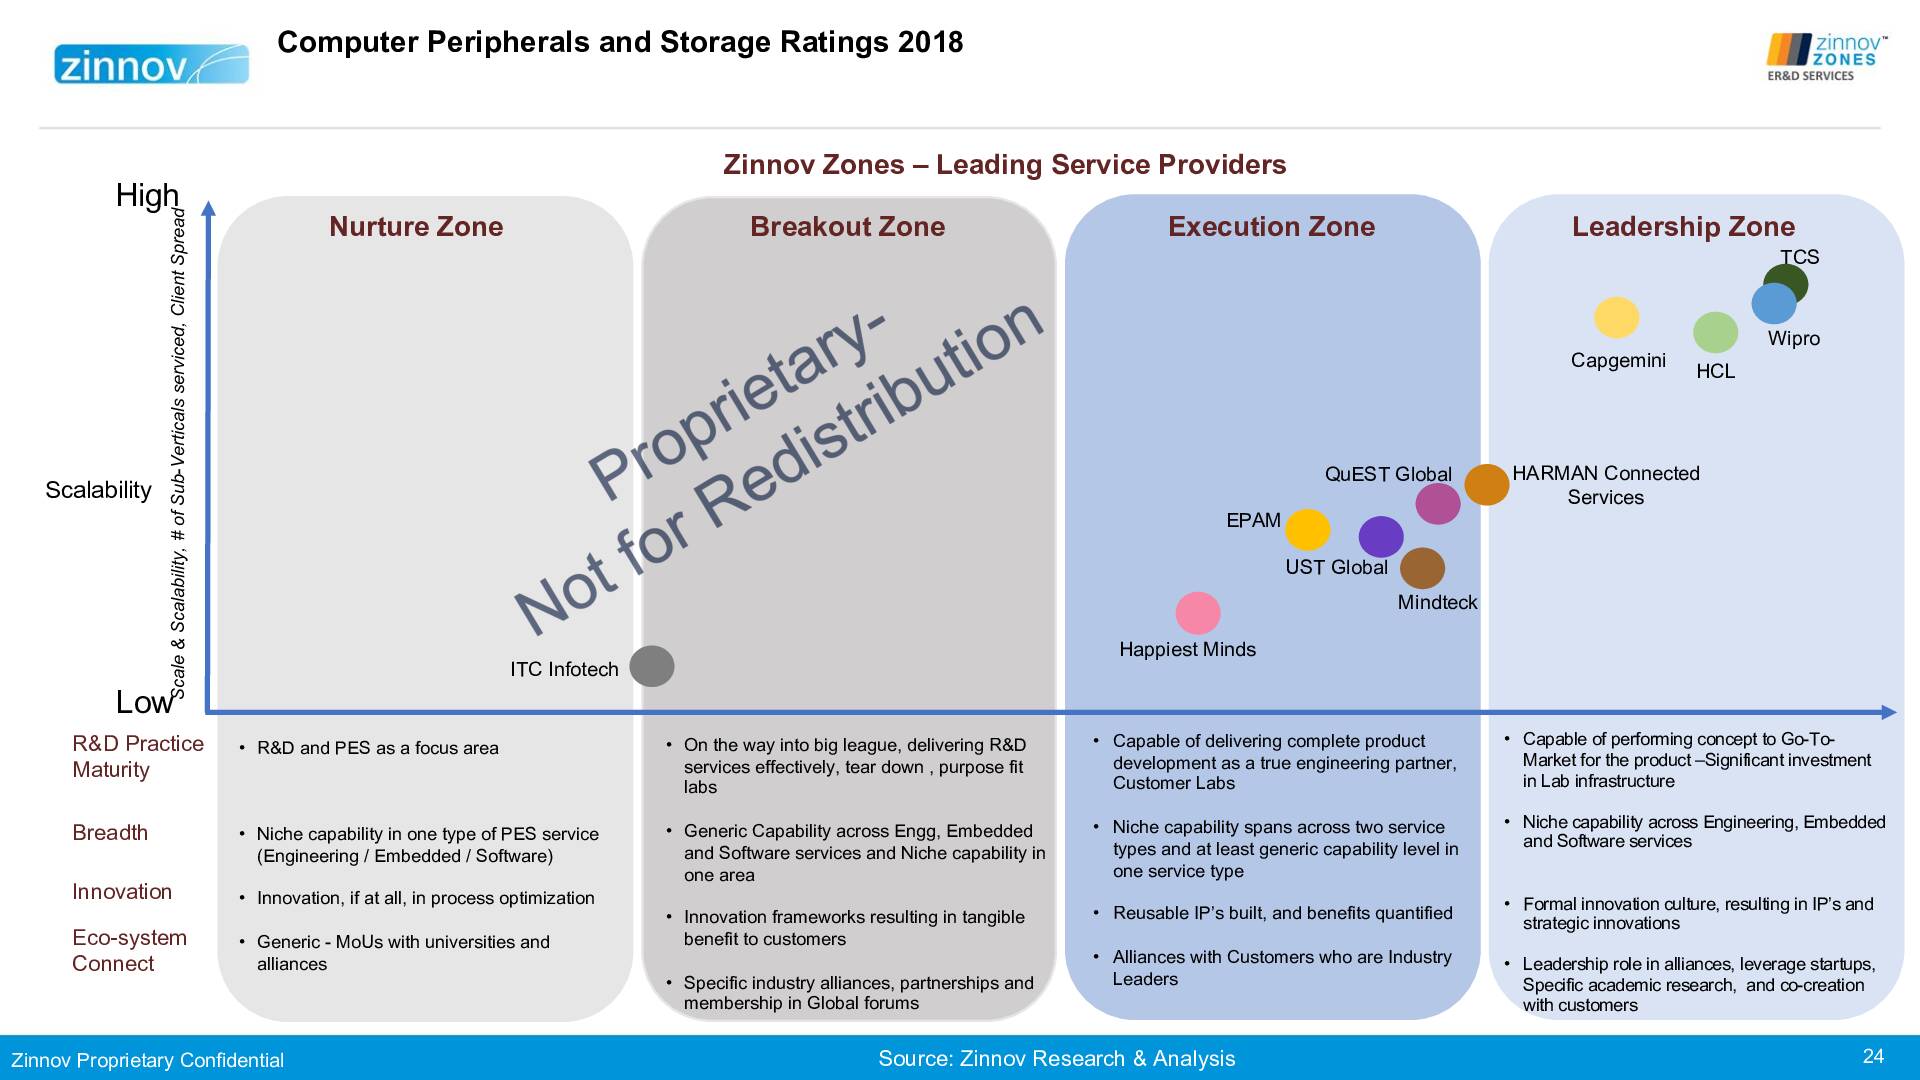 Zinnovzones Erd Ratings Report 201824